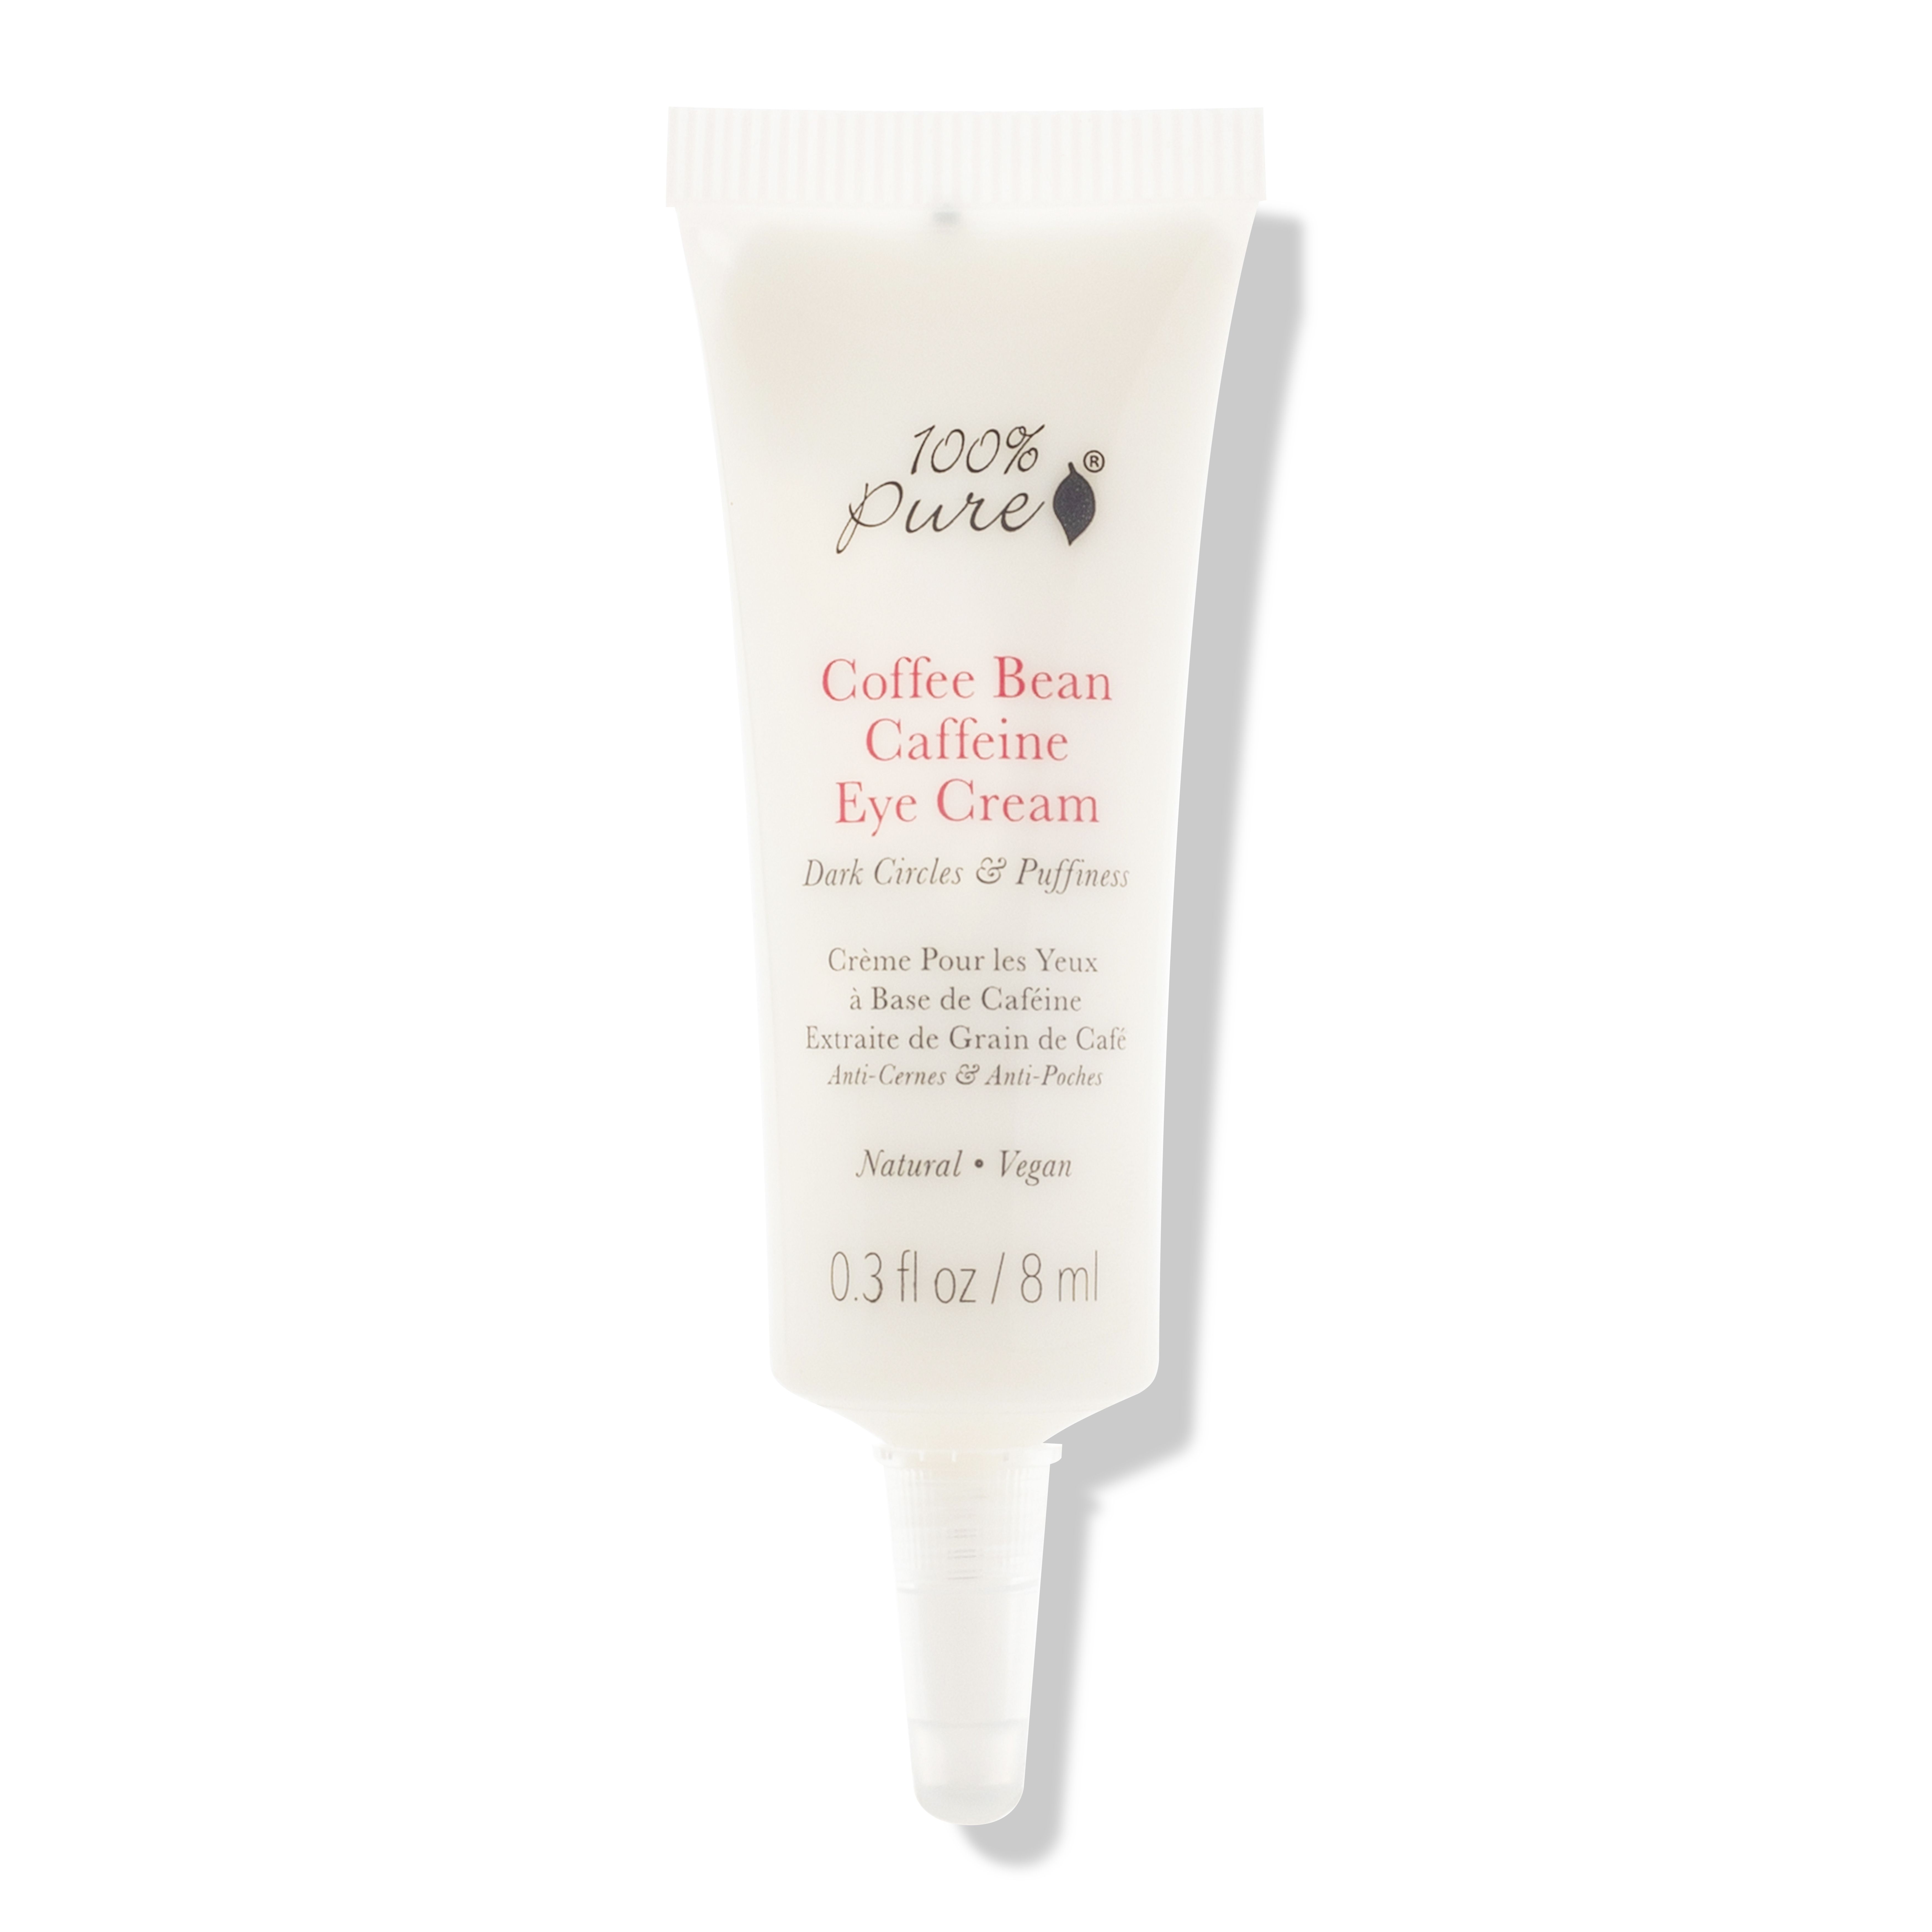 Coffee Bean Caffeine Eye Cream .3oz | 100% Pure